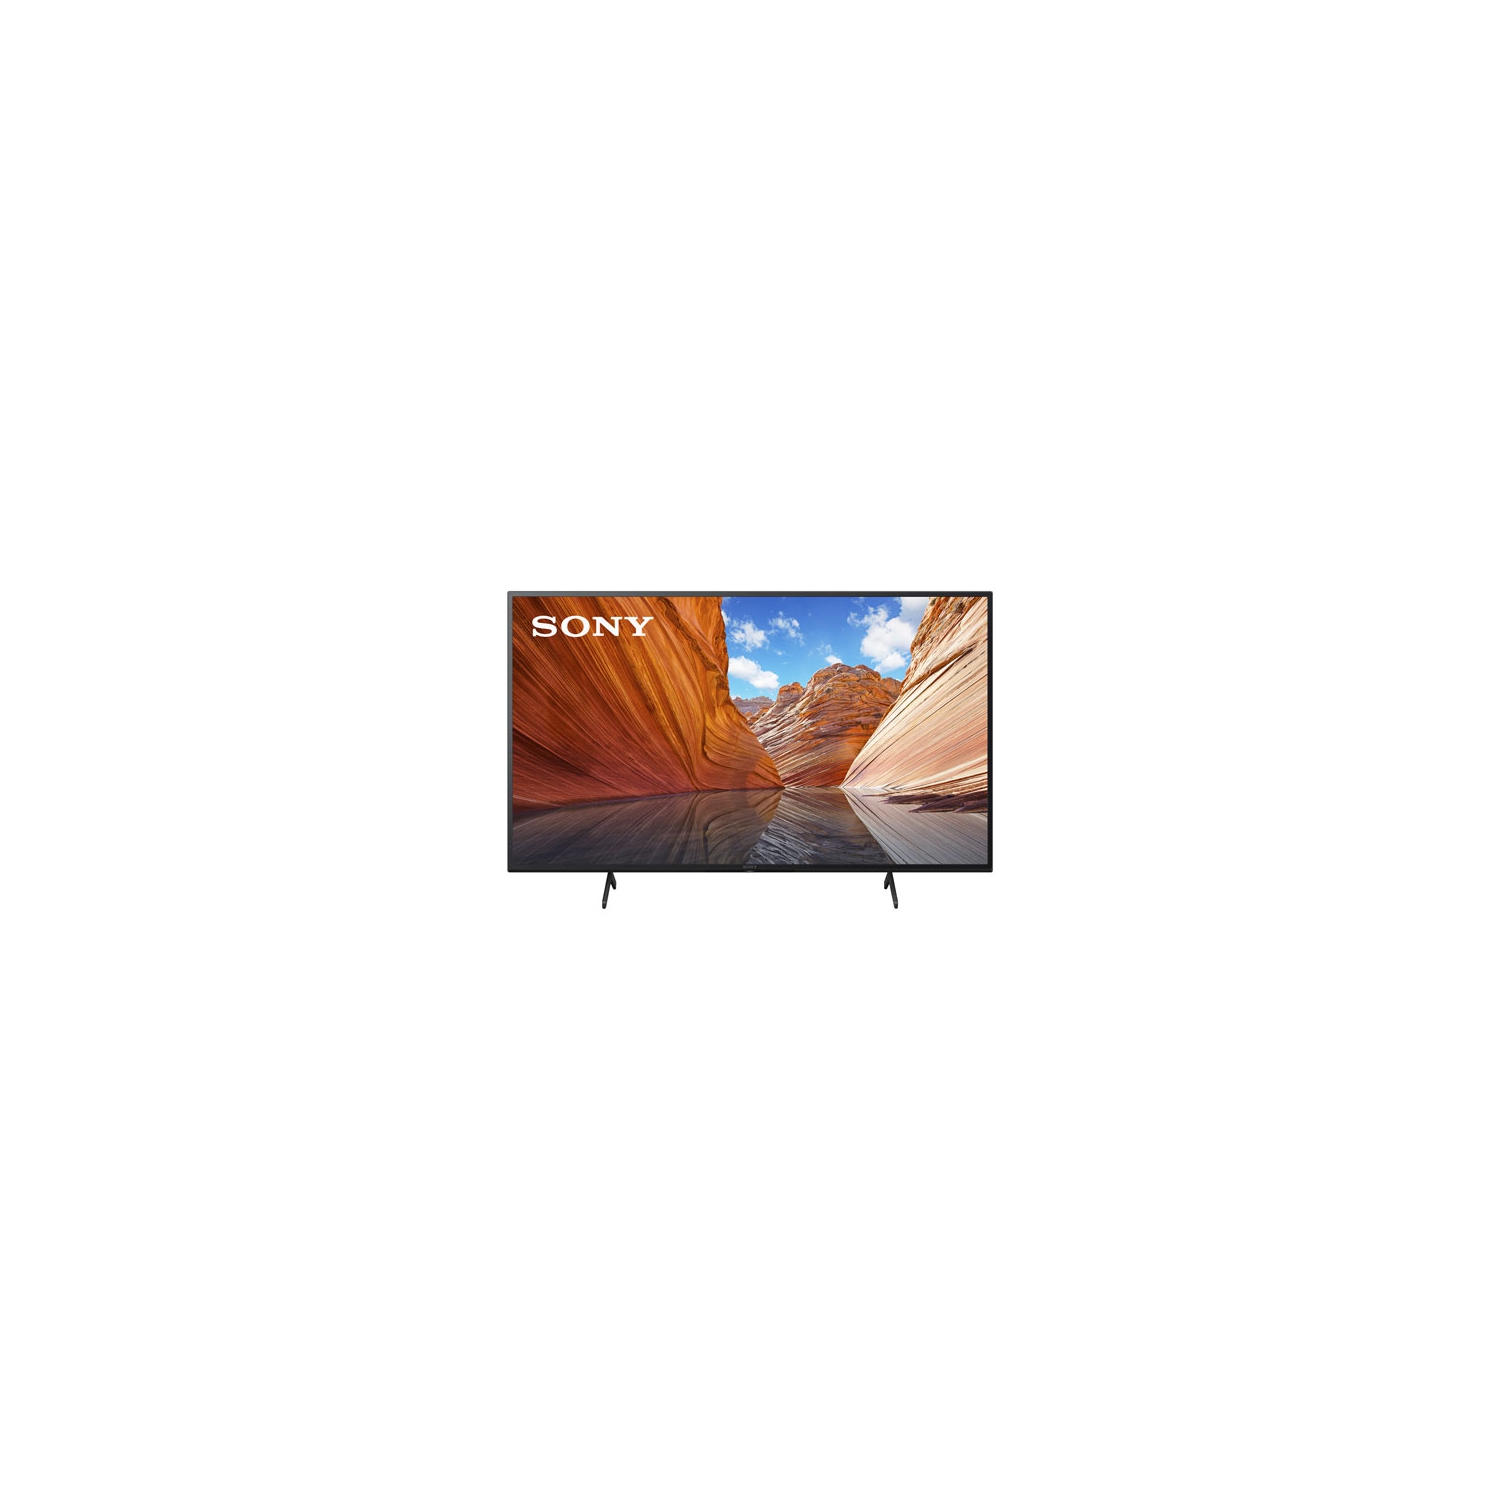 Refurbished (Excellent) - Sony X80J 43" 4K UHD HDR LED Smart Google TV (KD43X80J) - 2021